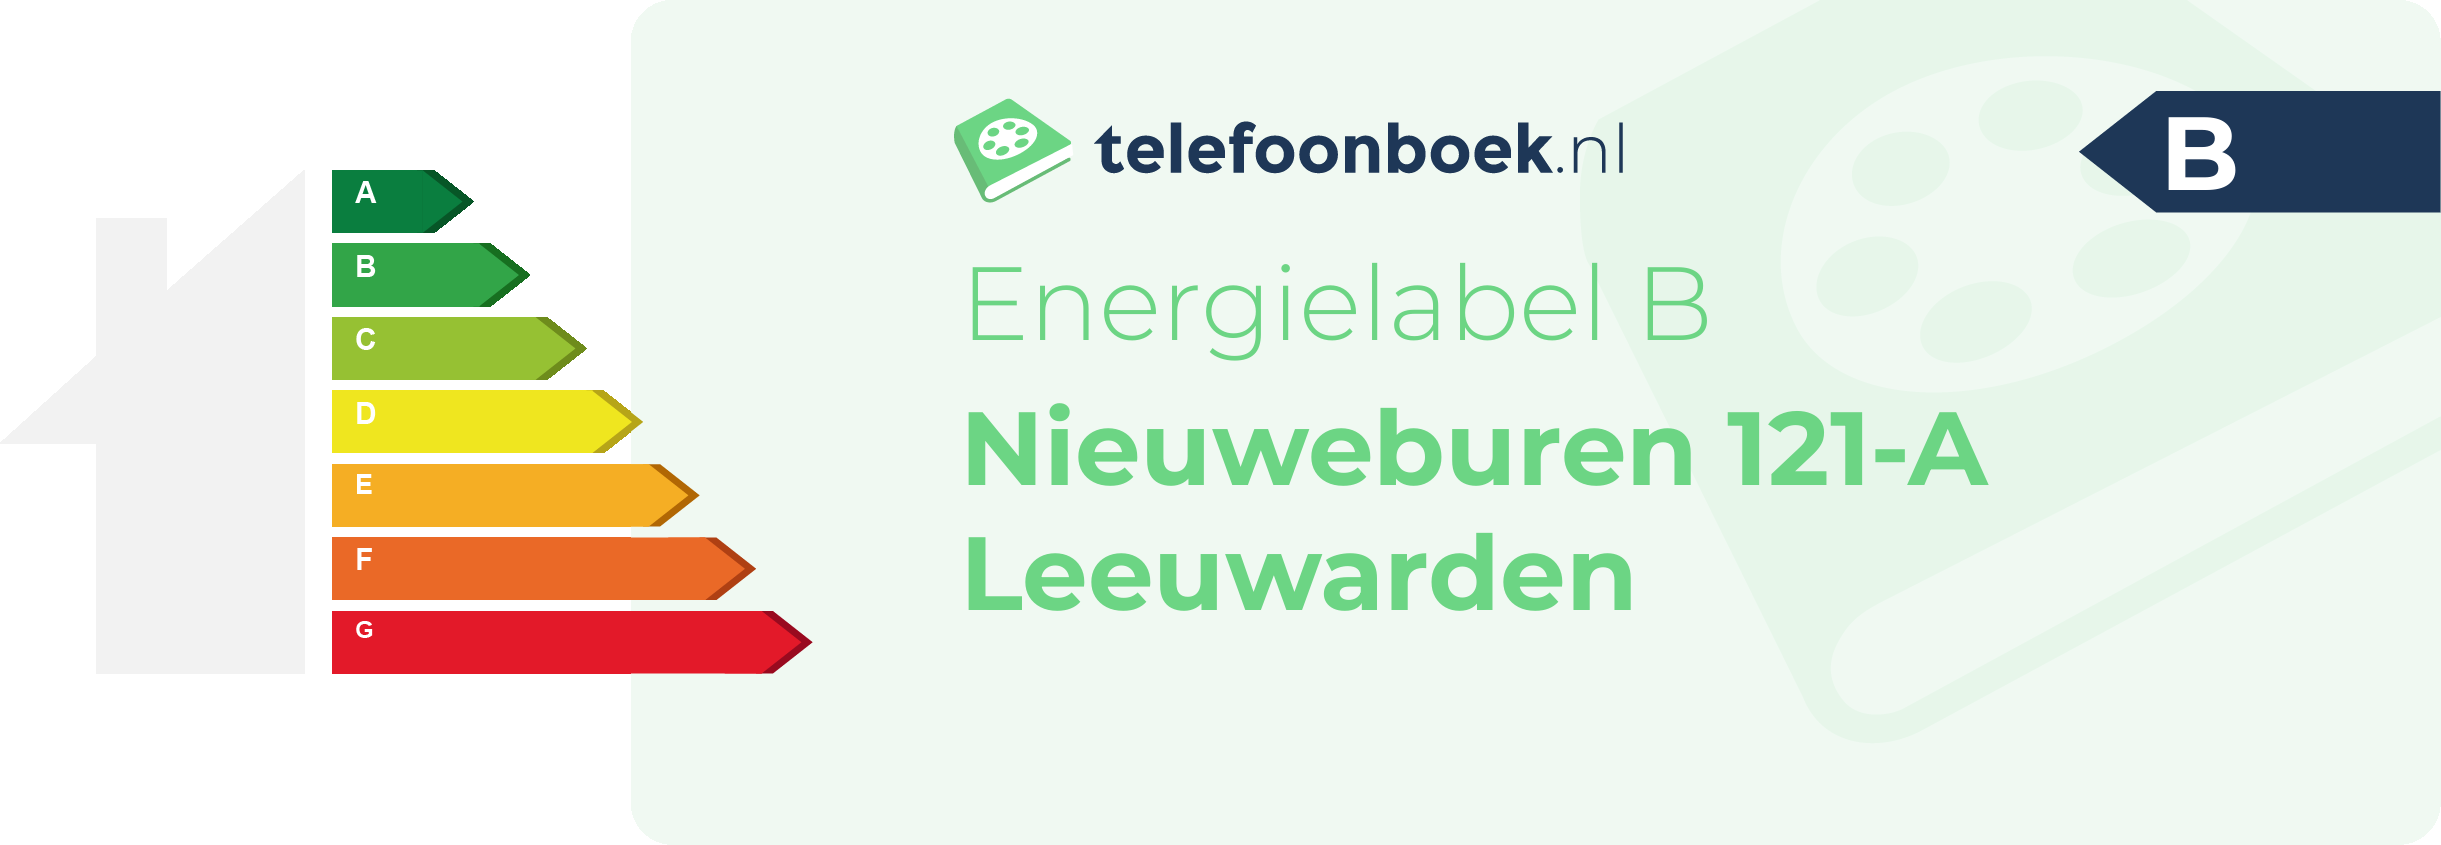 Energielabel Nieuweburen 121-A Leeuwarden